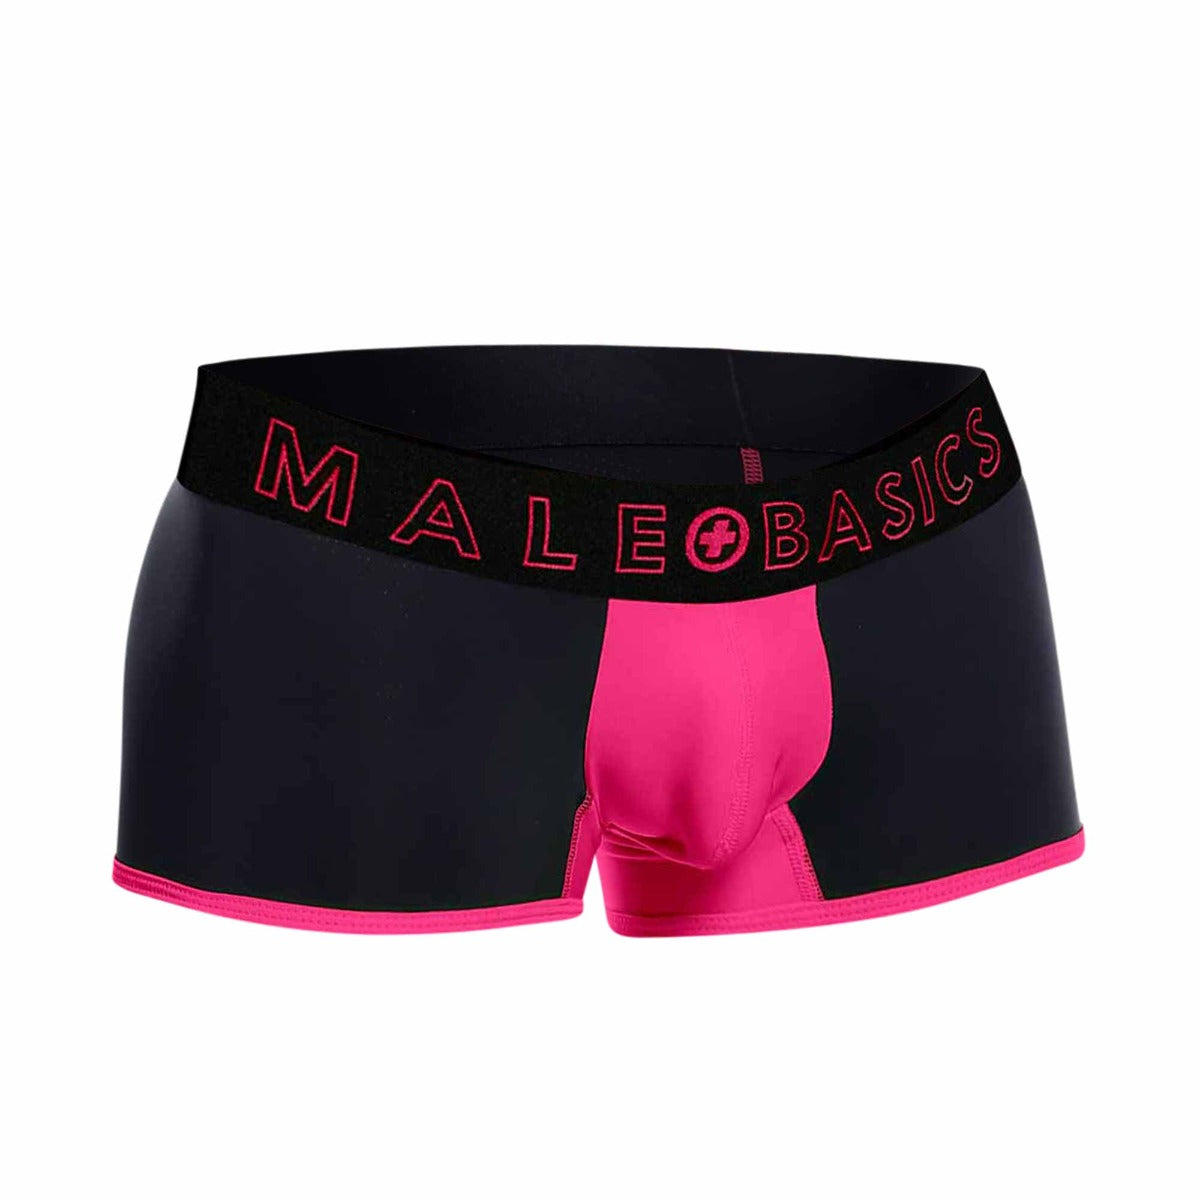 MaleBasics Nuevo Boxer Corto Neon